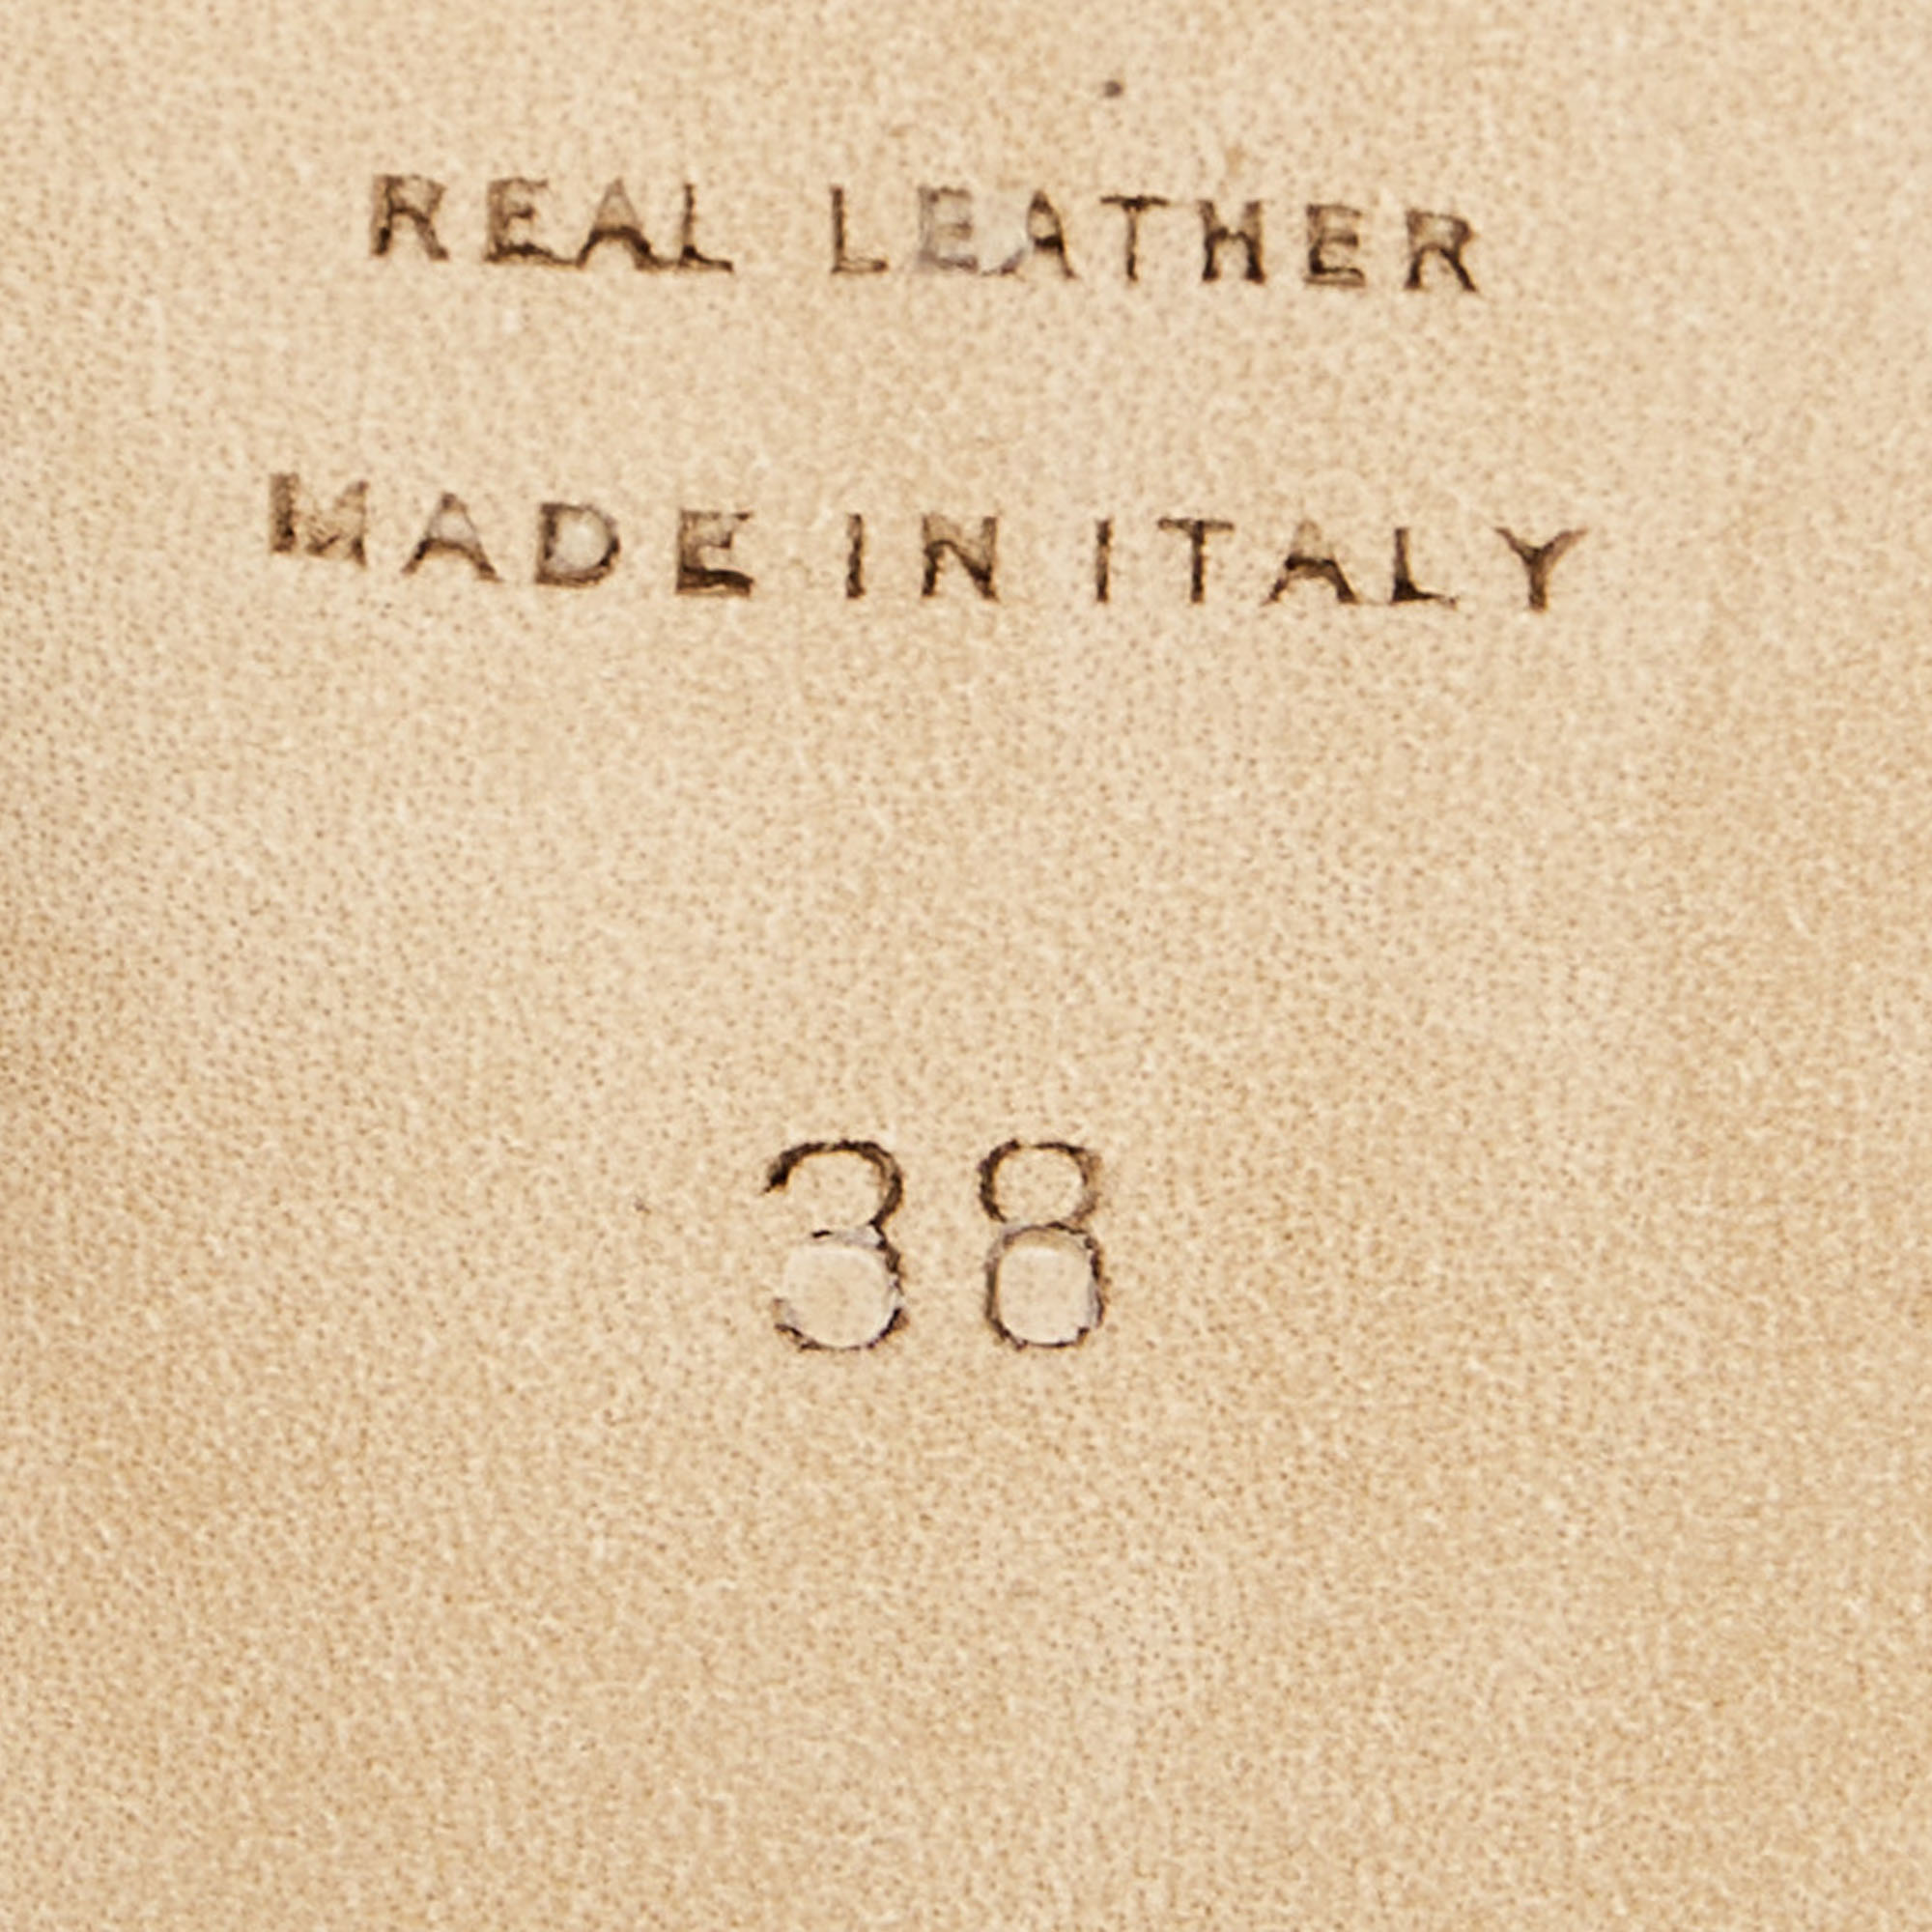 Christopher Kane Black Patent Leather Embellished Slingback Pumps Size 38